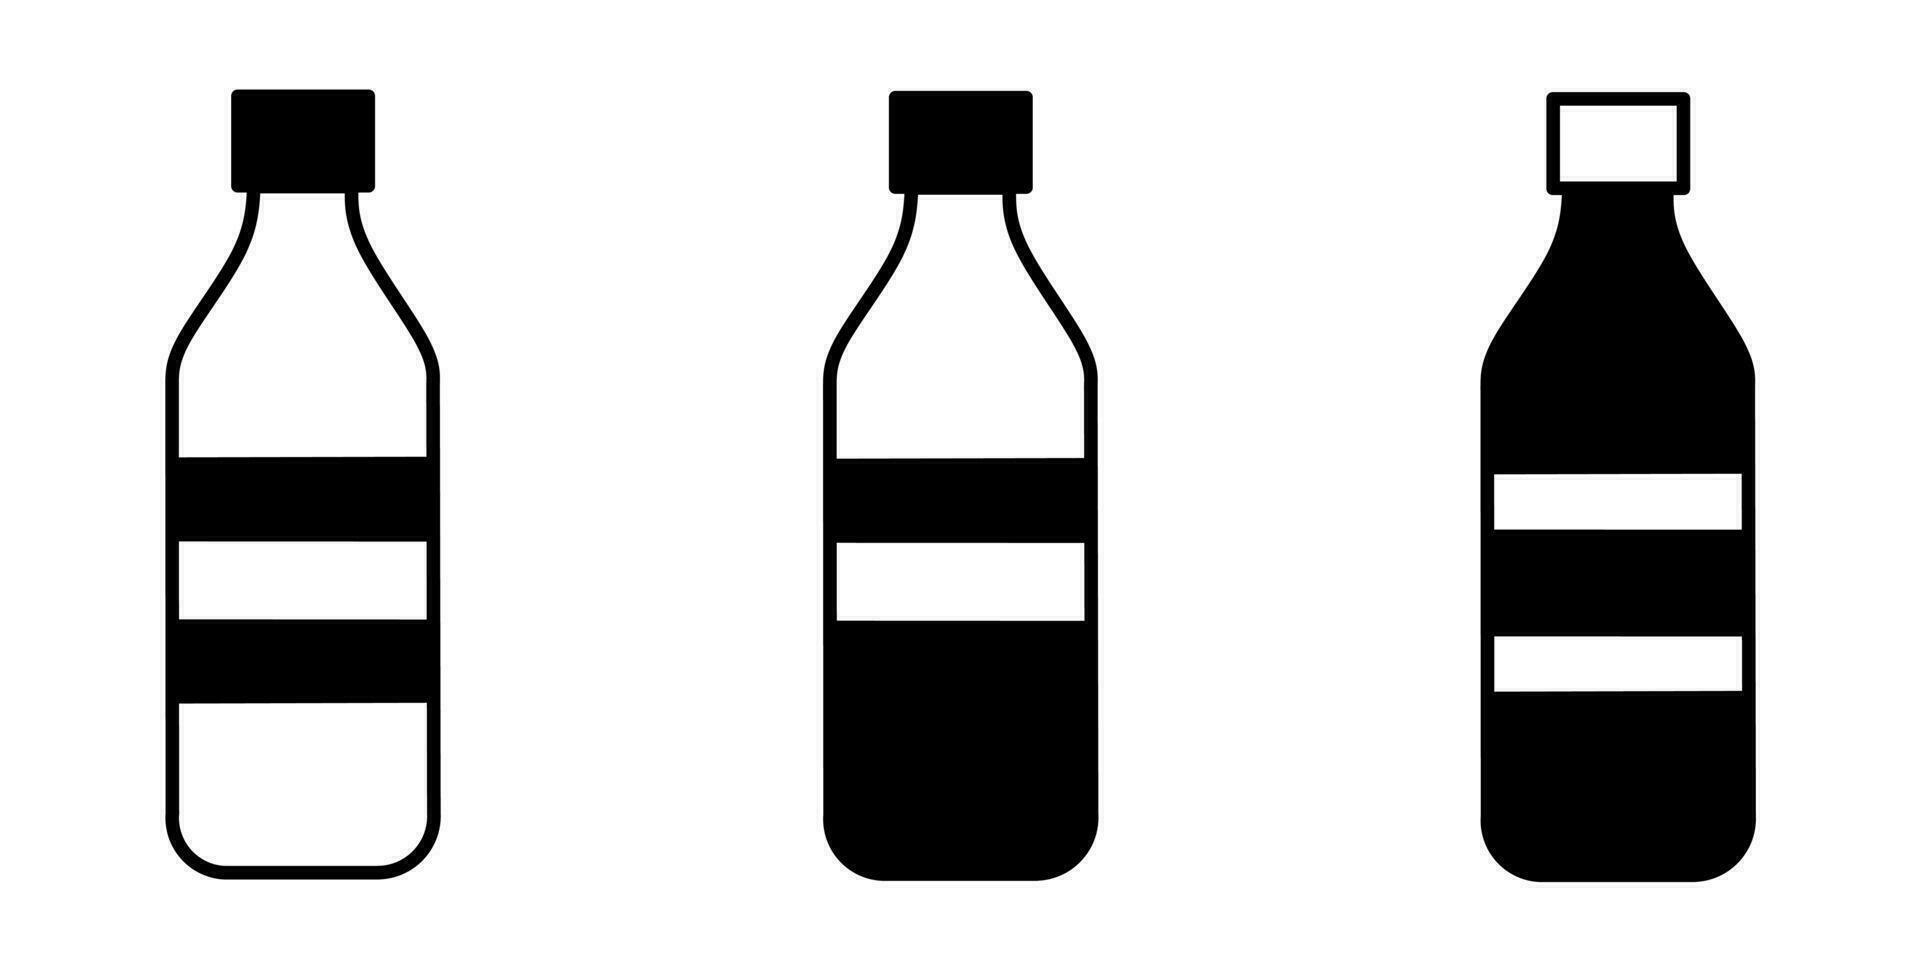 Bottle illustration. Bottle icon vector set. Design for business. Stock vector.